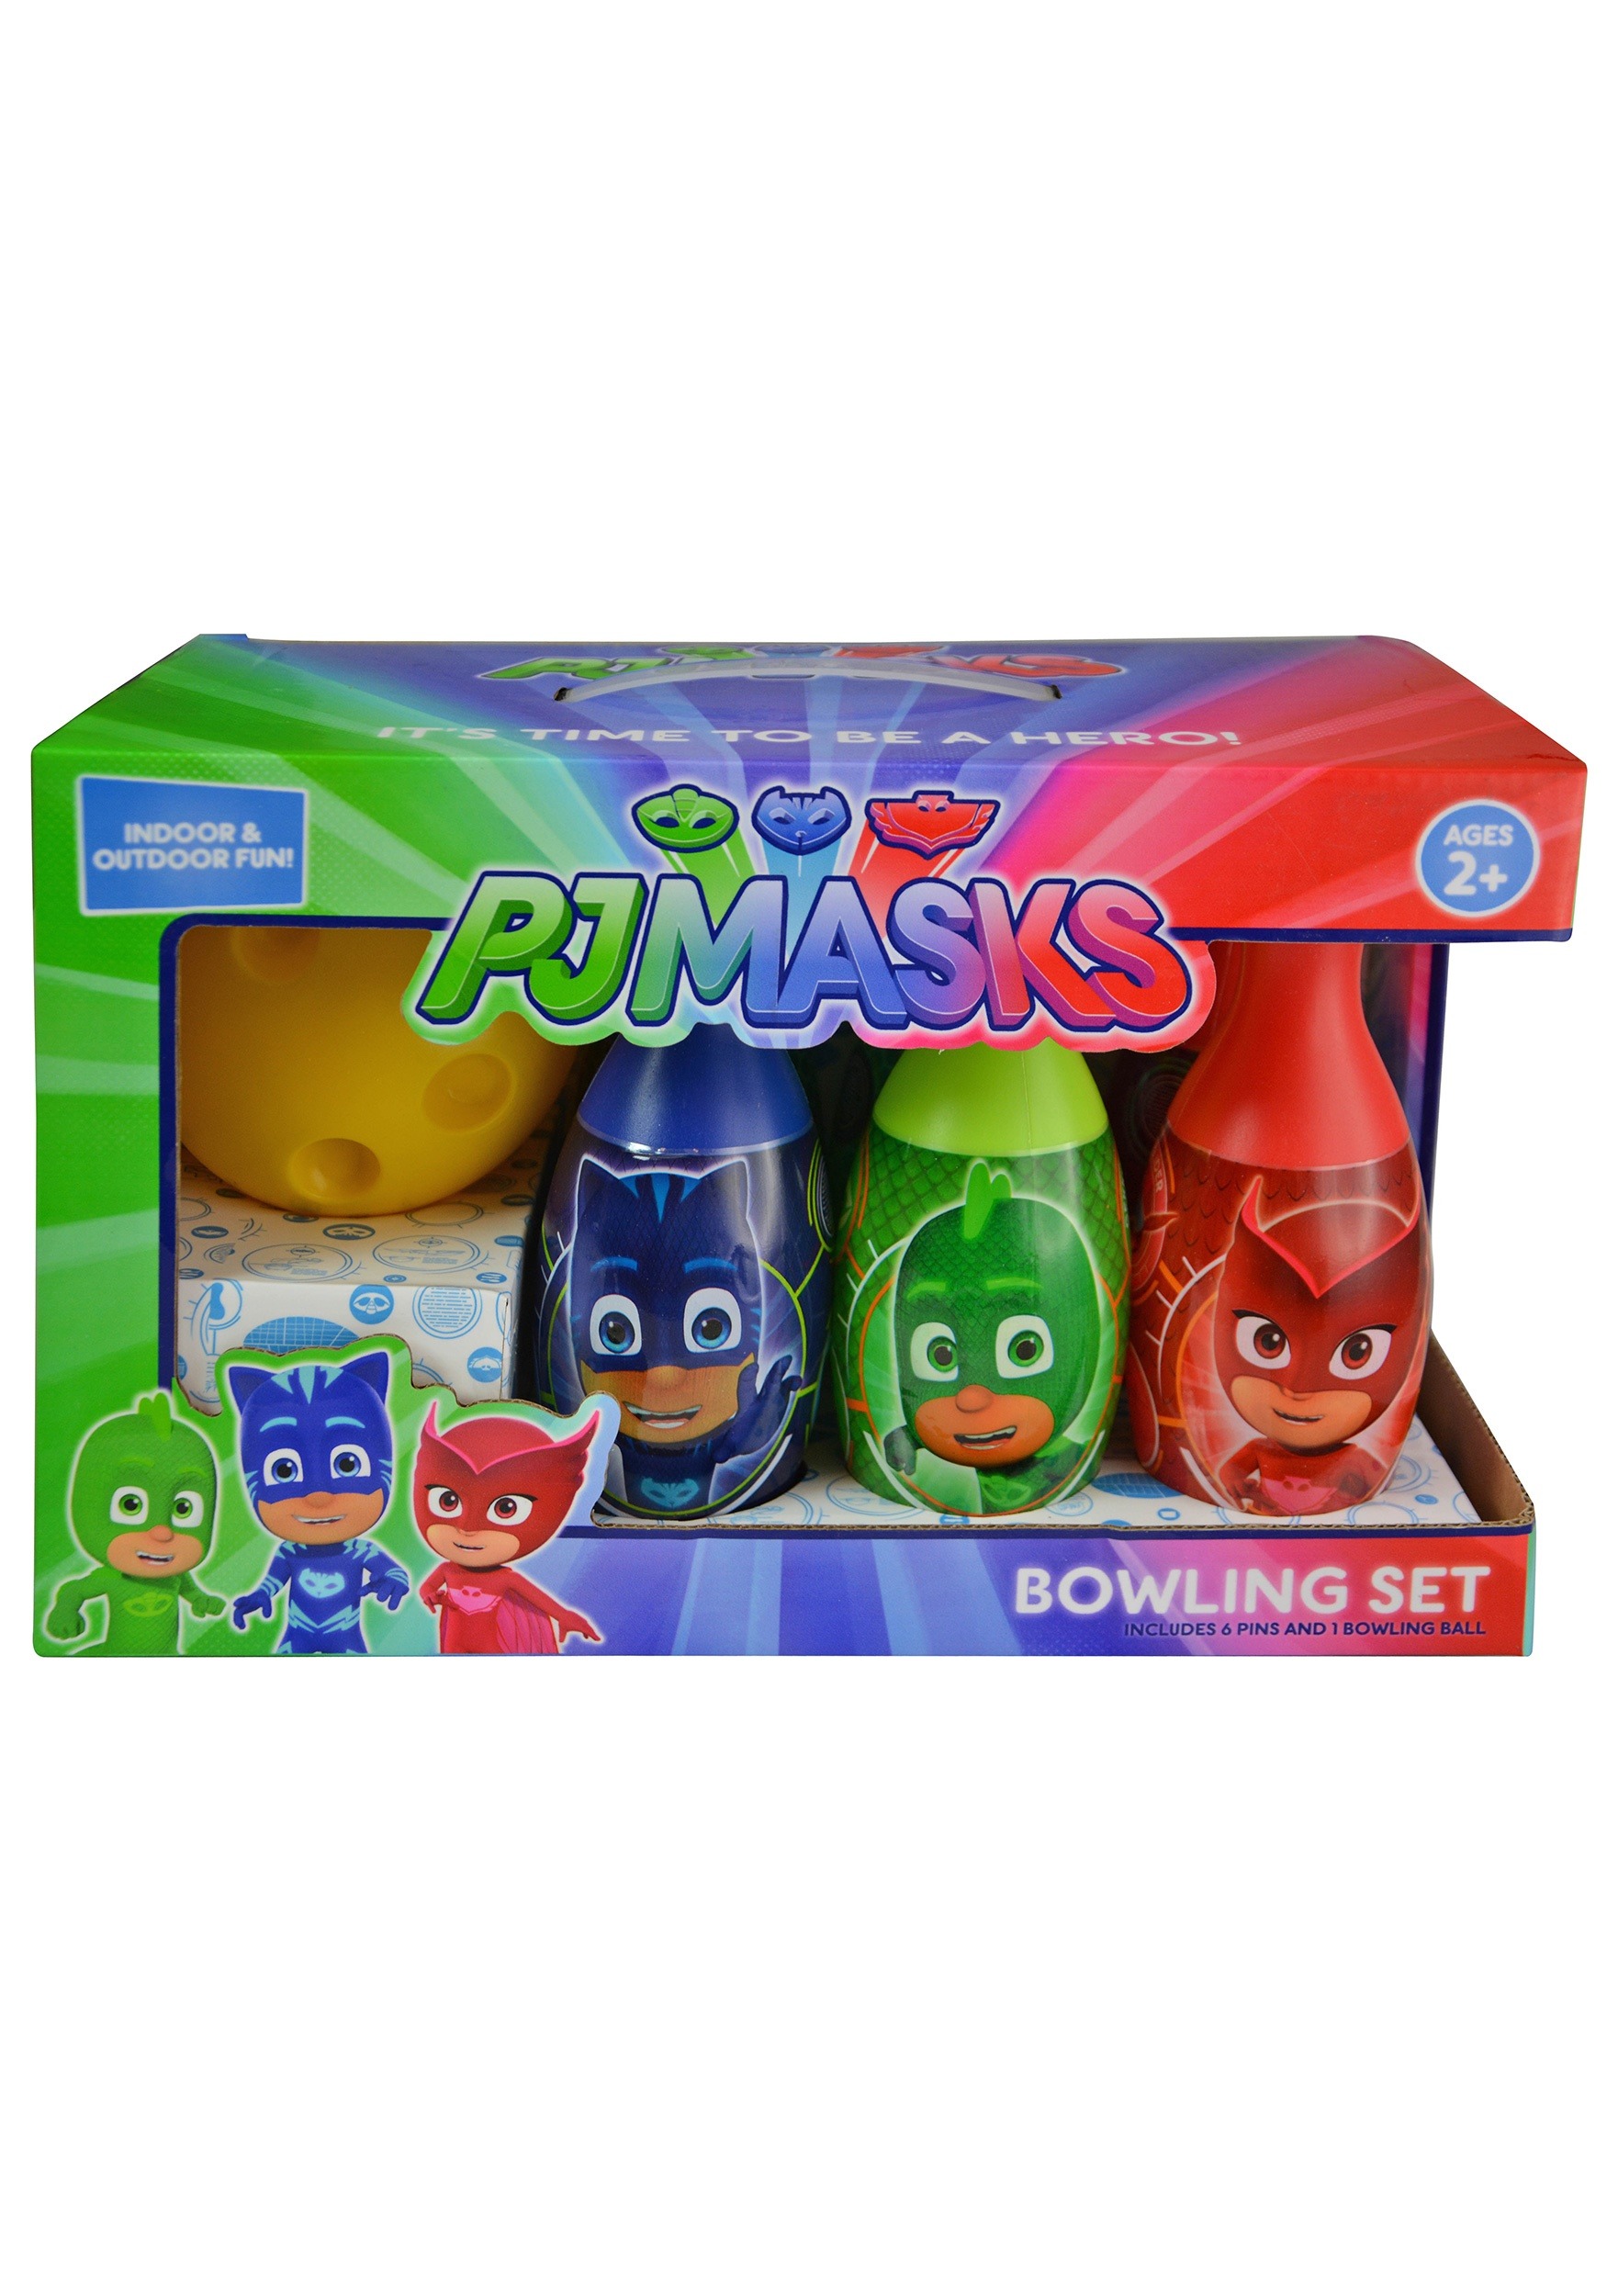 PJ Masks Bowling Set for Kids